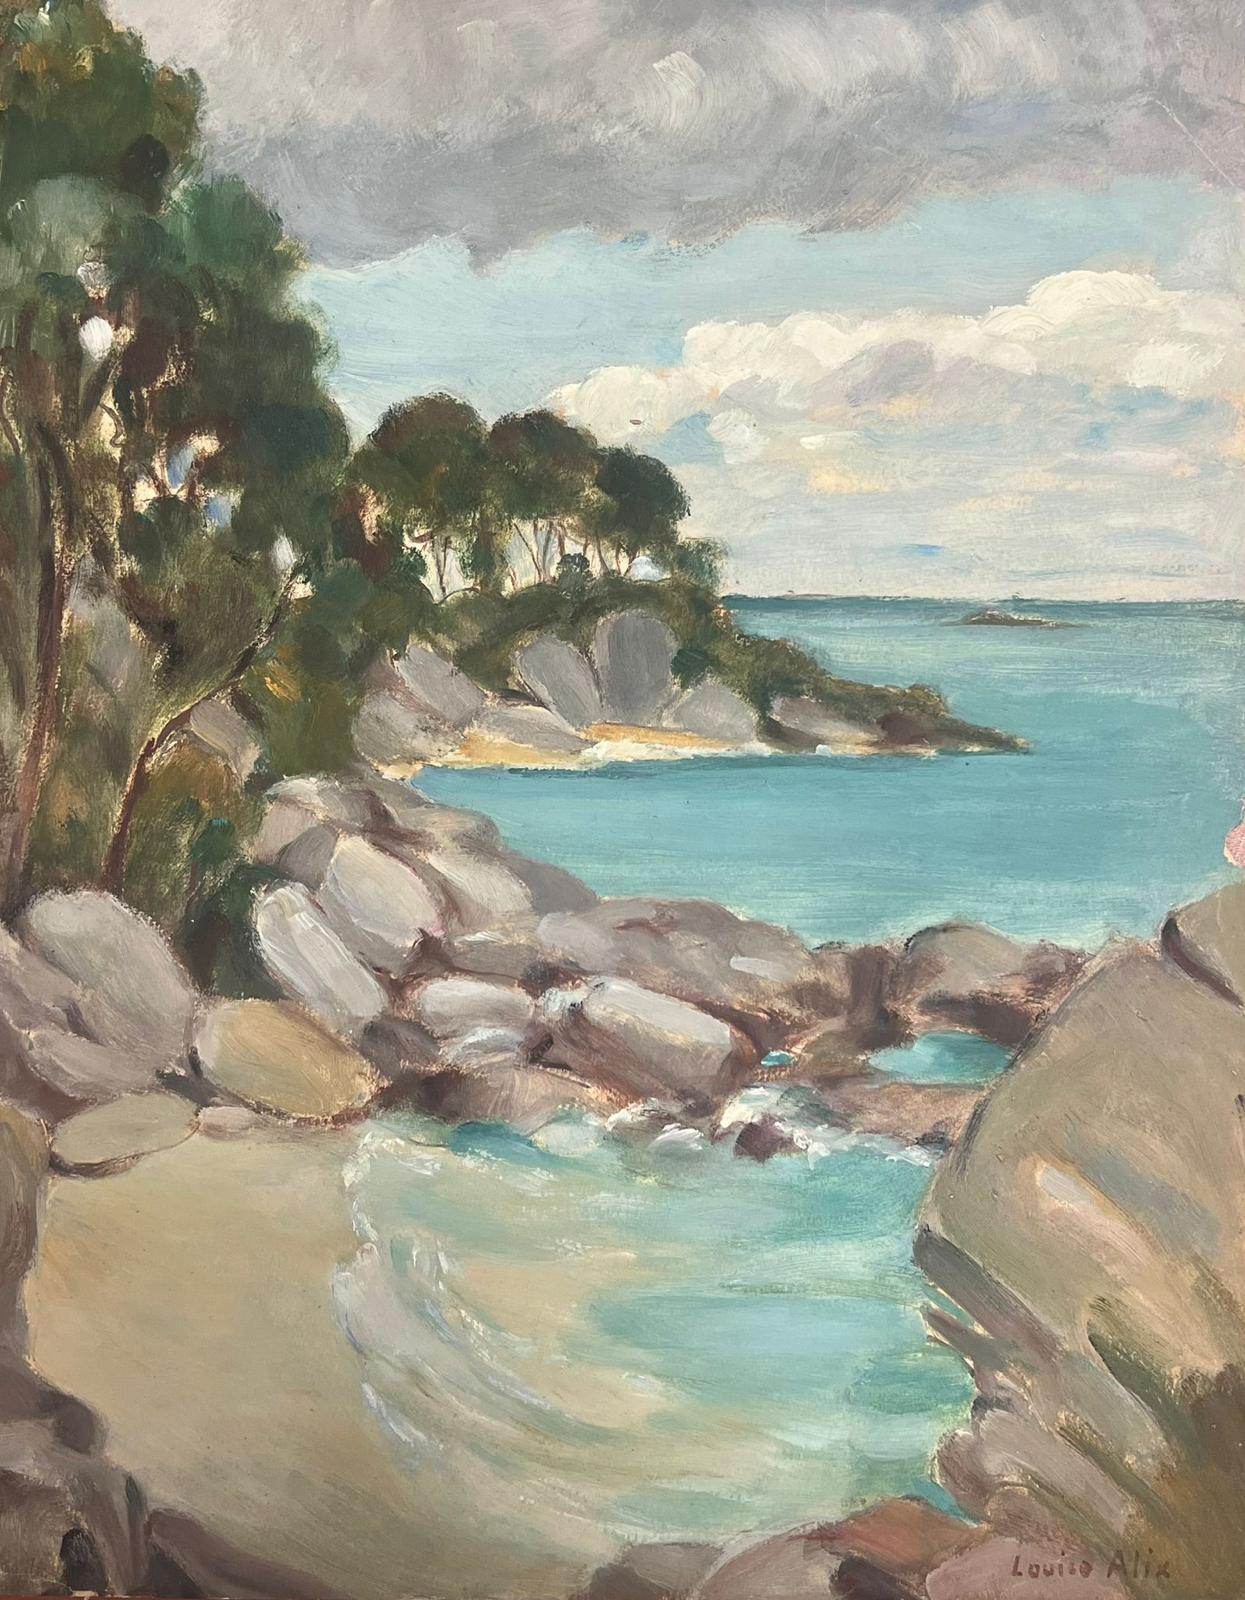 Landscape Painting Louise Alix - Peinture à l'huile française des années 1930 Mer claire Plage rocheuse Baie Paysage